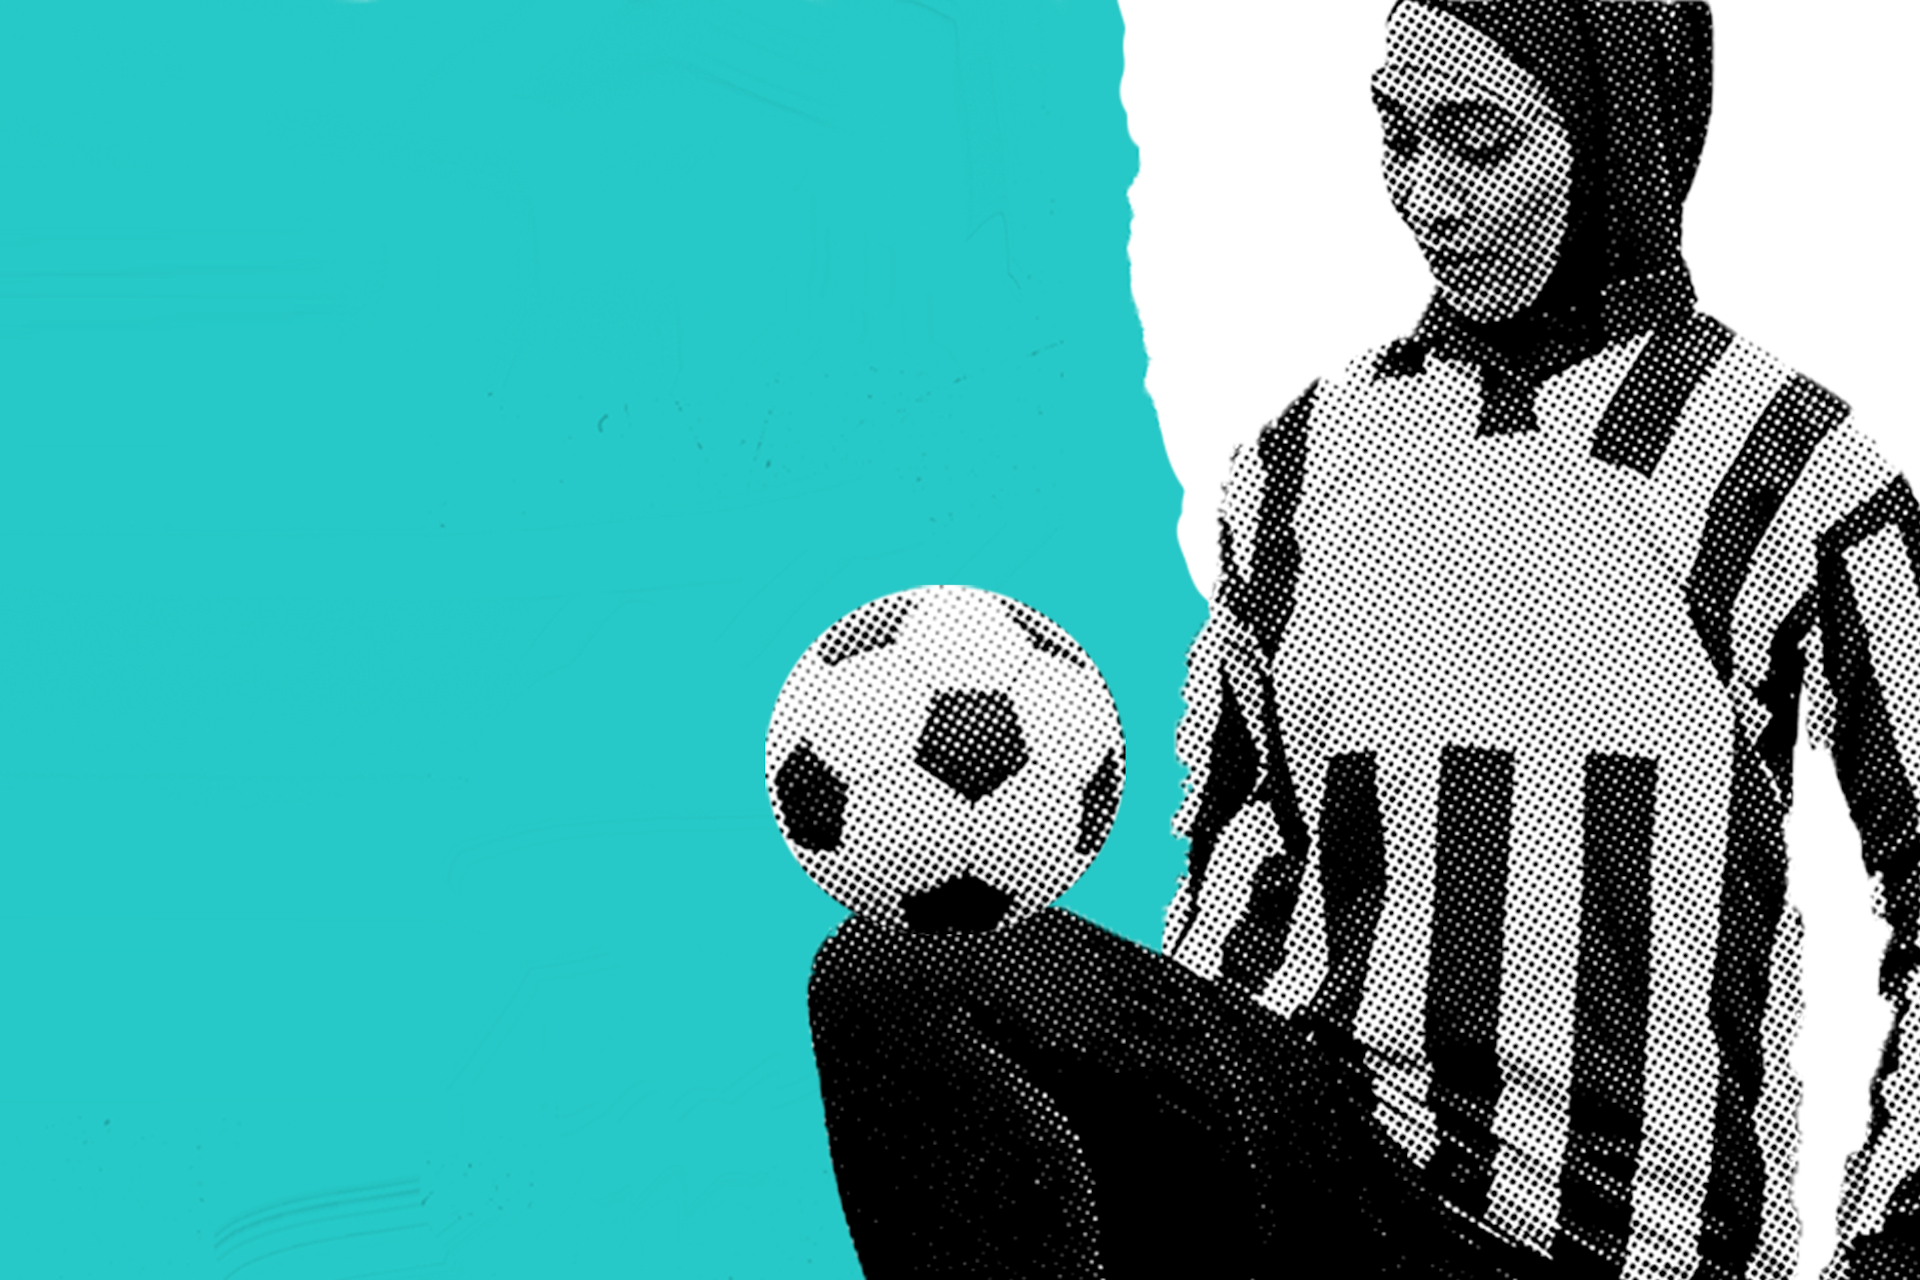 Das Bild zeigt eine Fußballspielerin, die einen Fußball von ihrem Knie abprallen lässt. Dieses Bild ist das Titelbild des "Birdseye Report" zum Thema Sport, der die größten Trends der sozialen Medien im Sport beschreibt. 